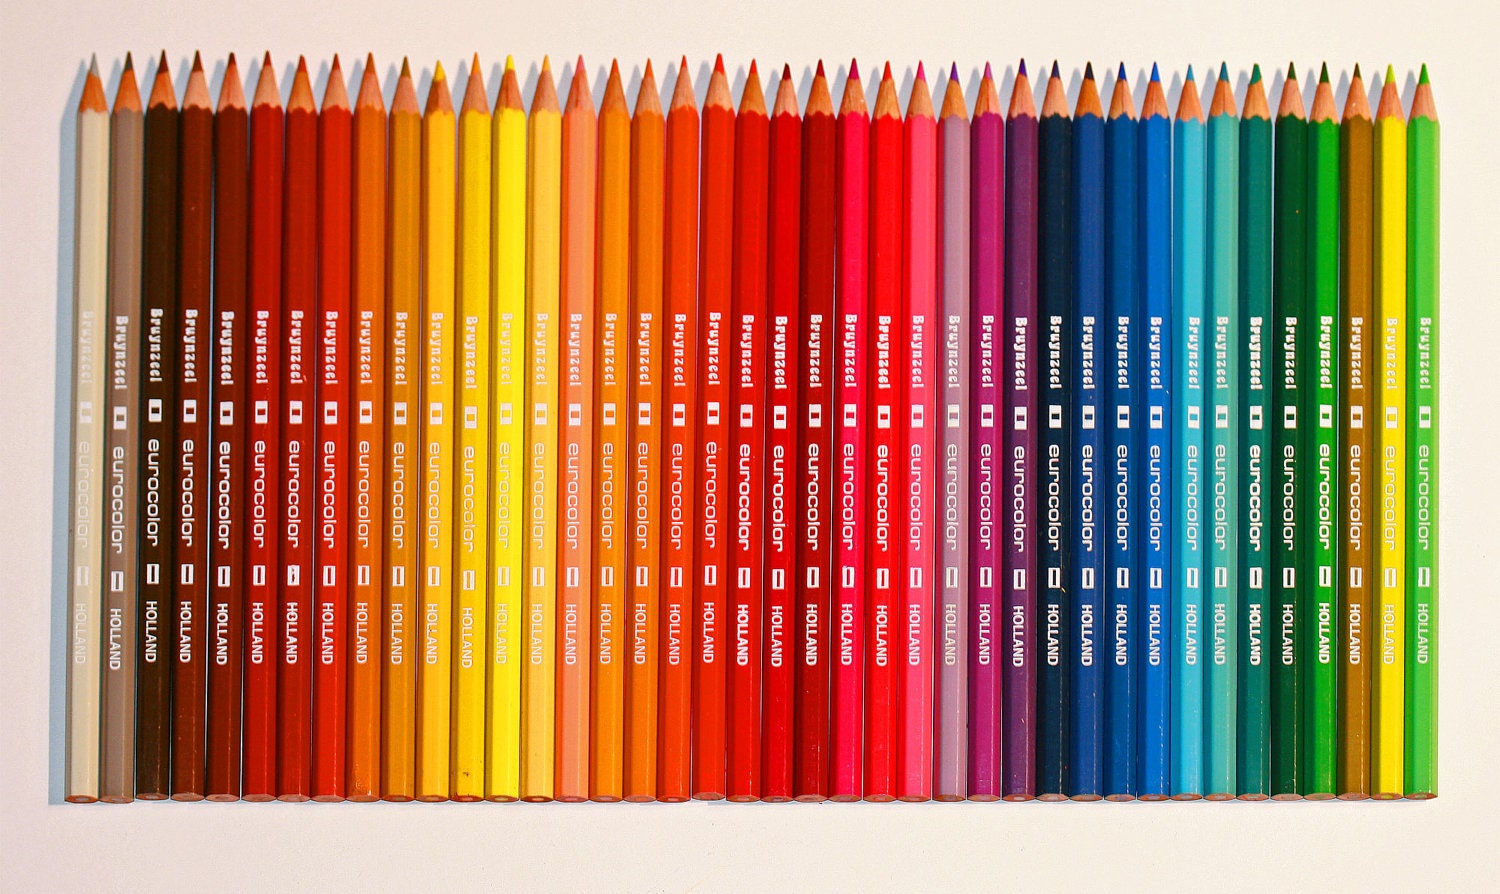 colored pencil